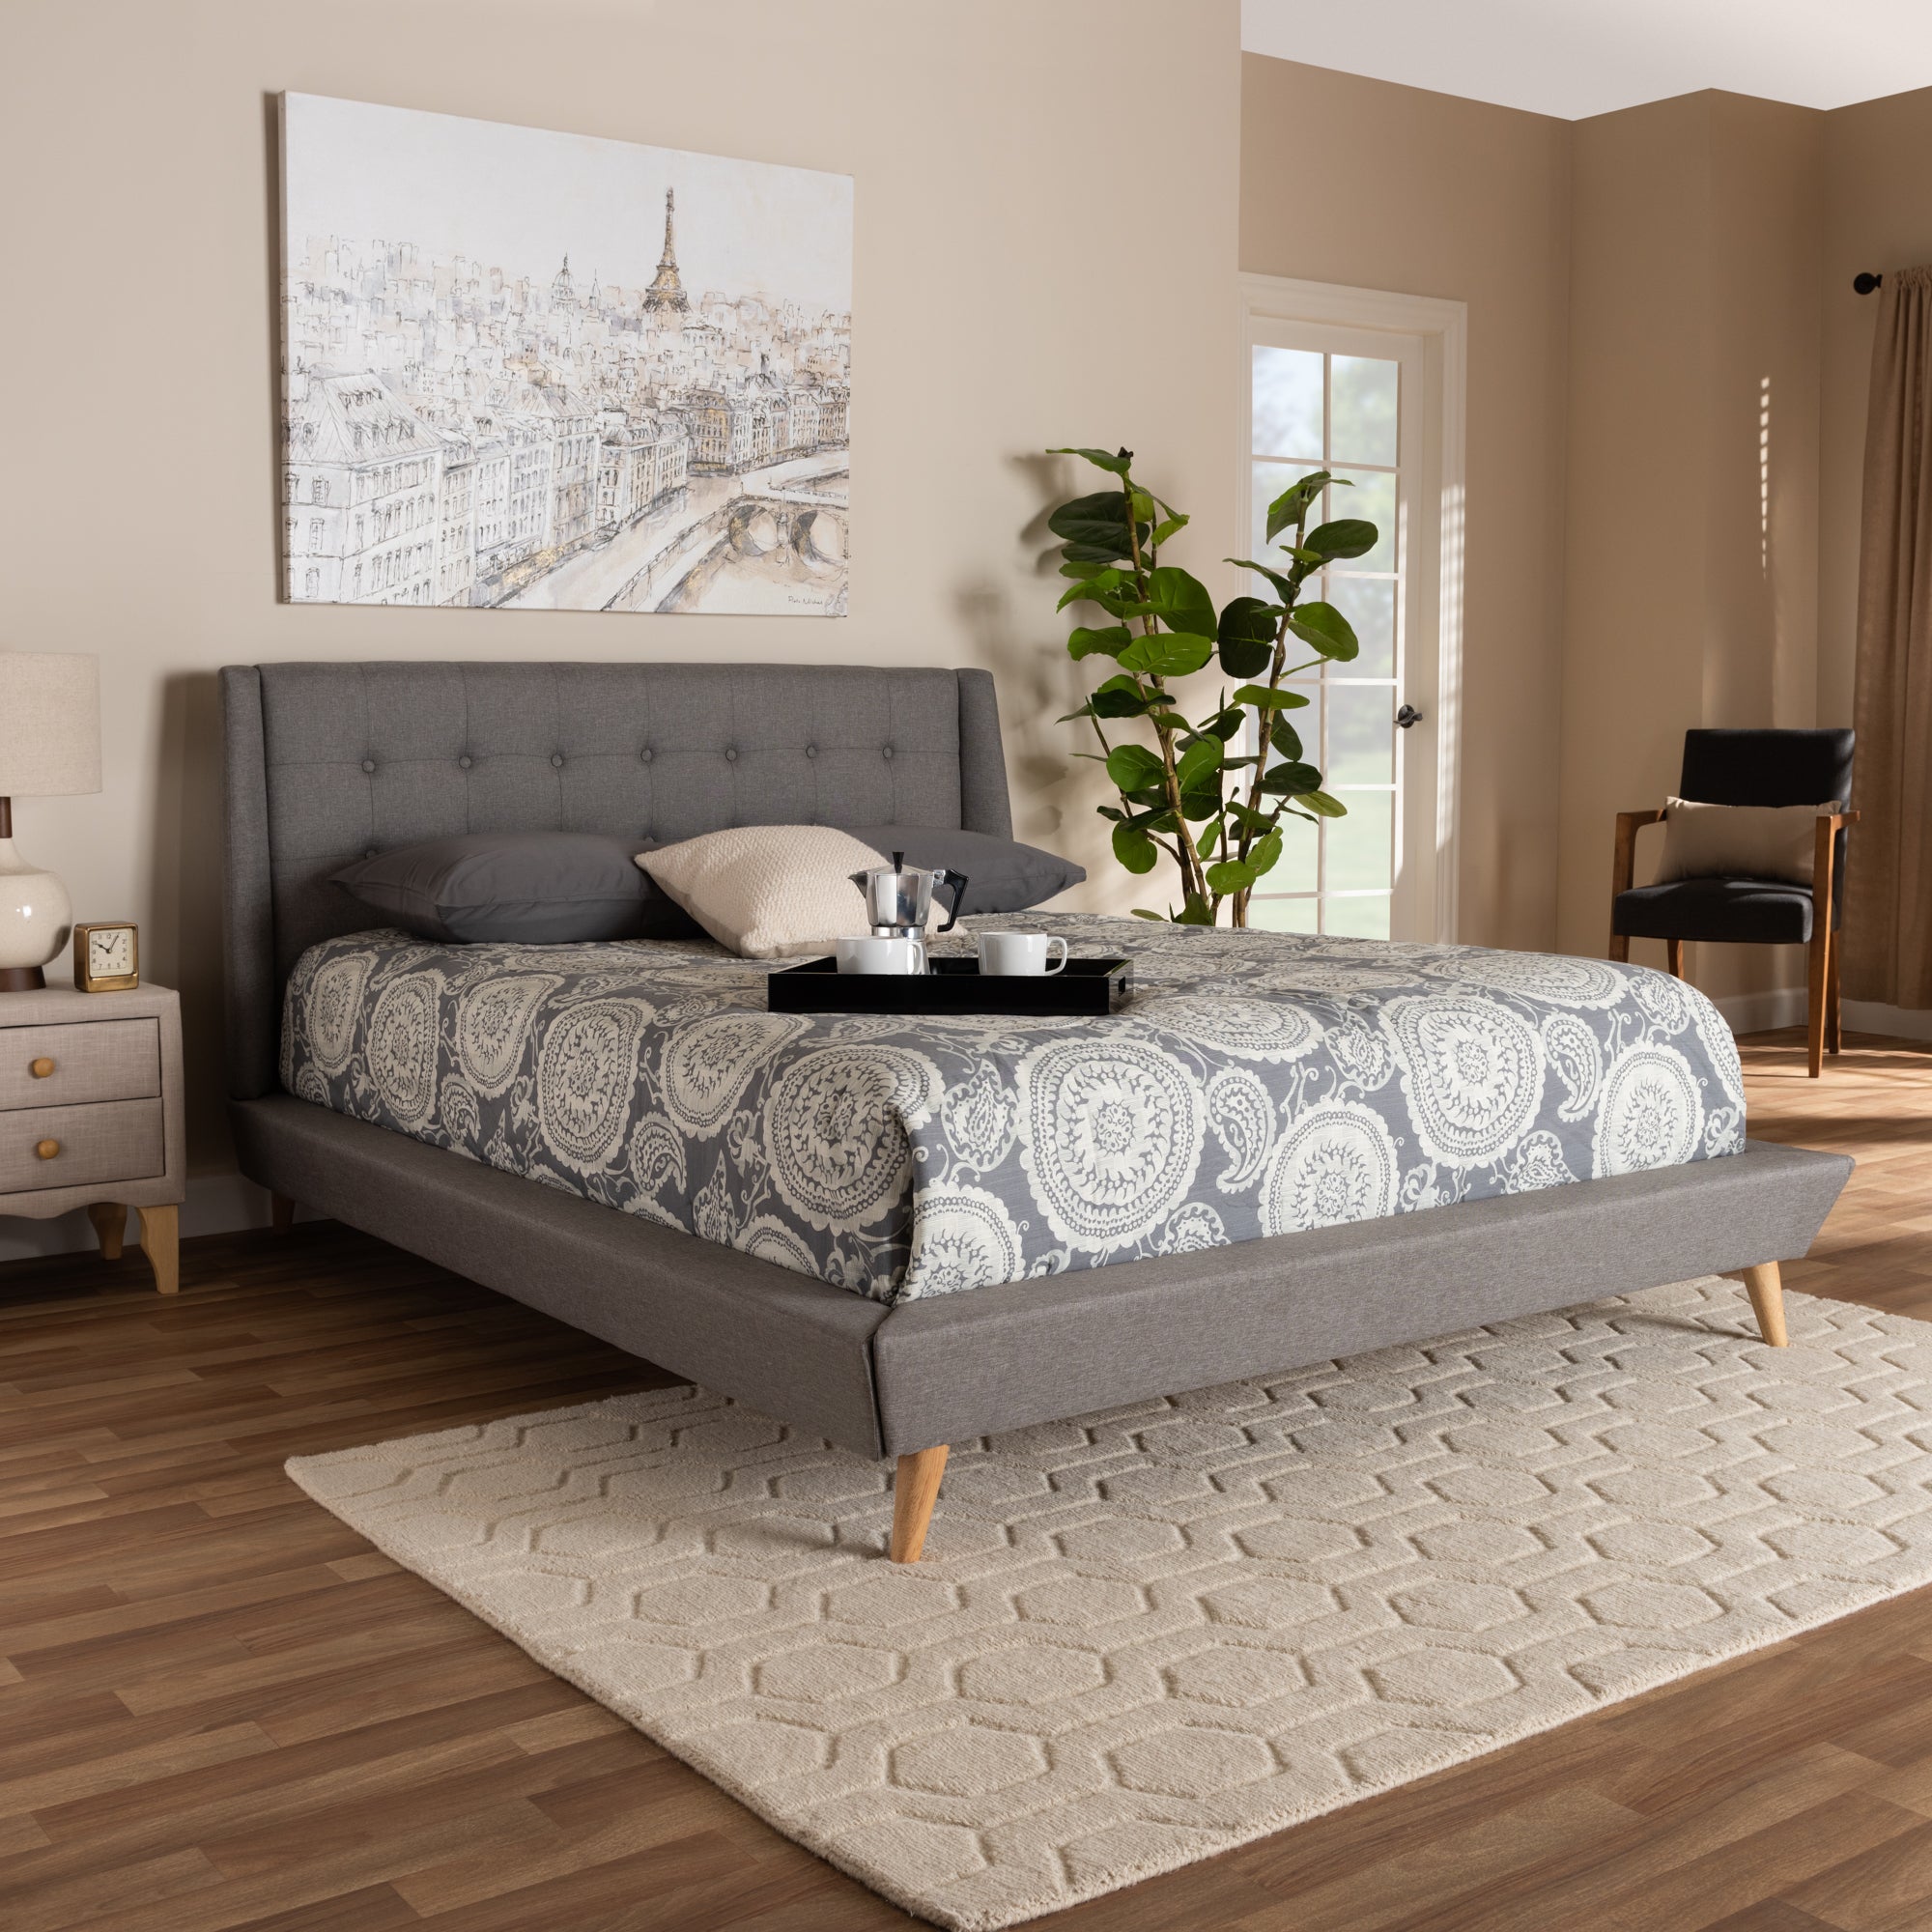 Naya Mid-Century Bed-Bed-Baxton Studio - WI-Wall2Wall Furnishings